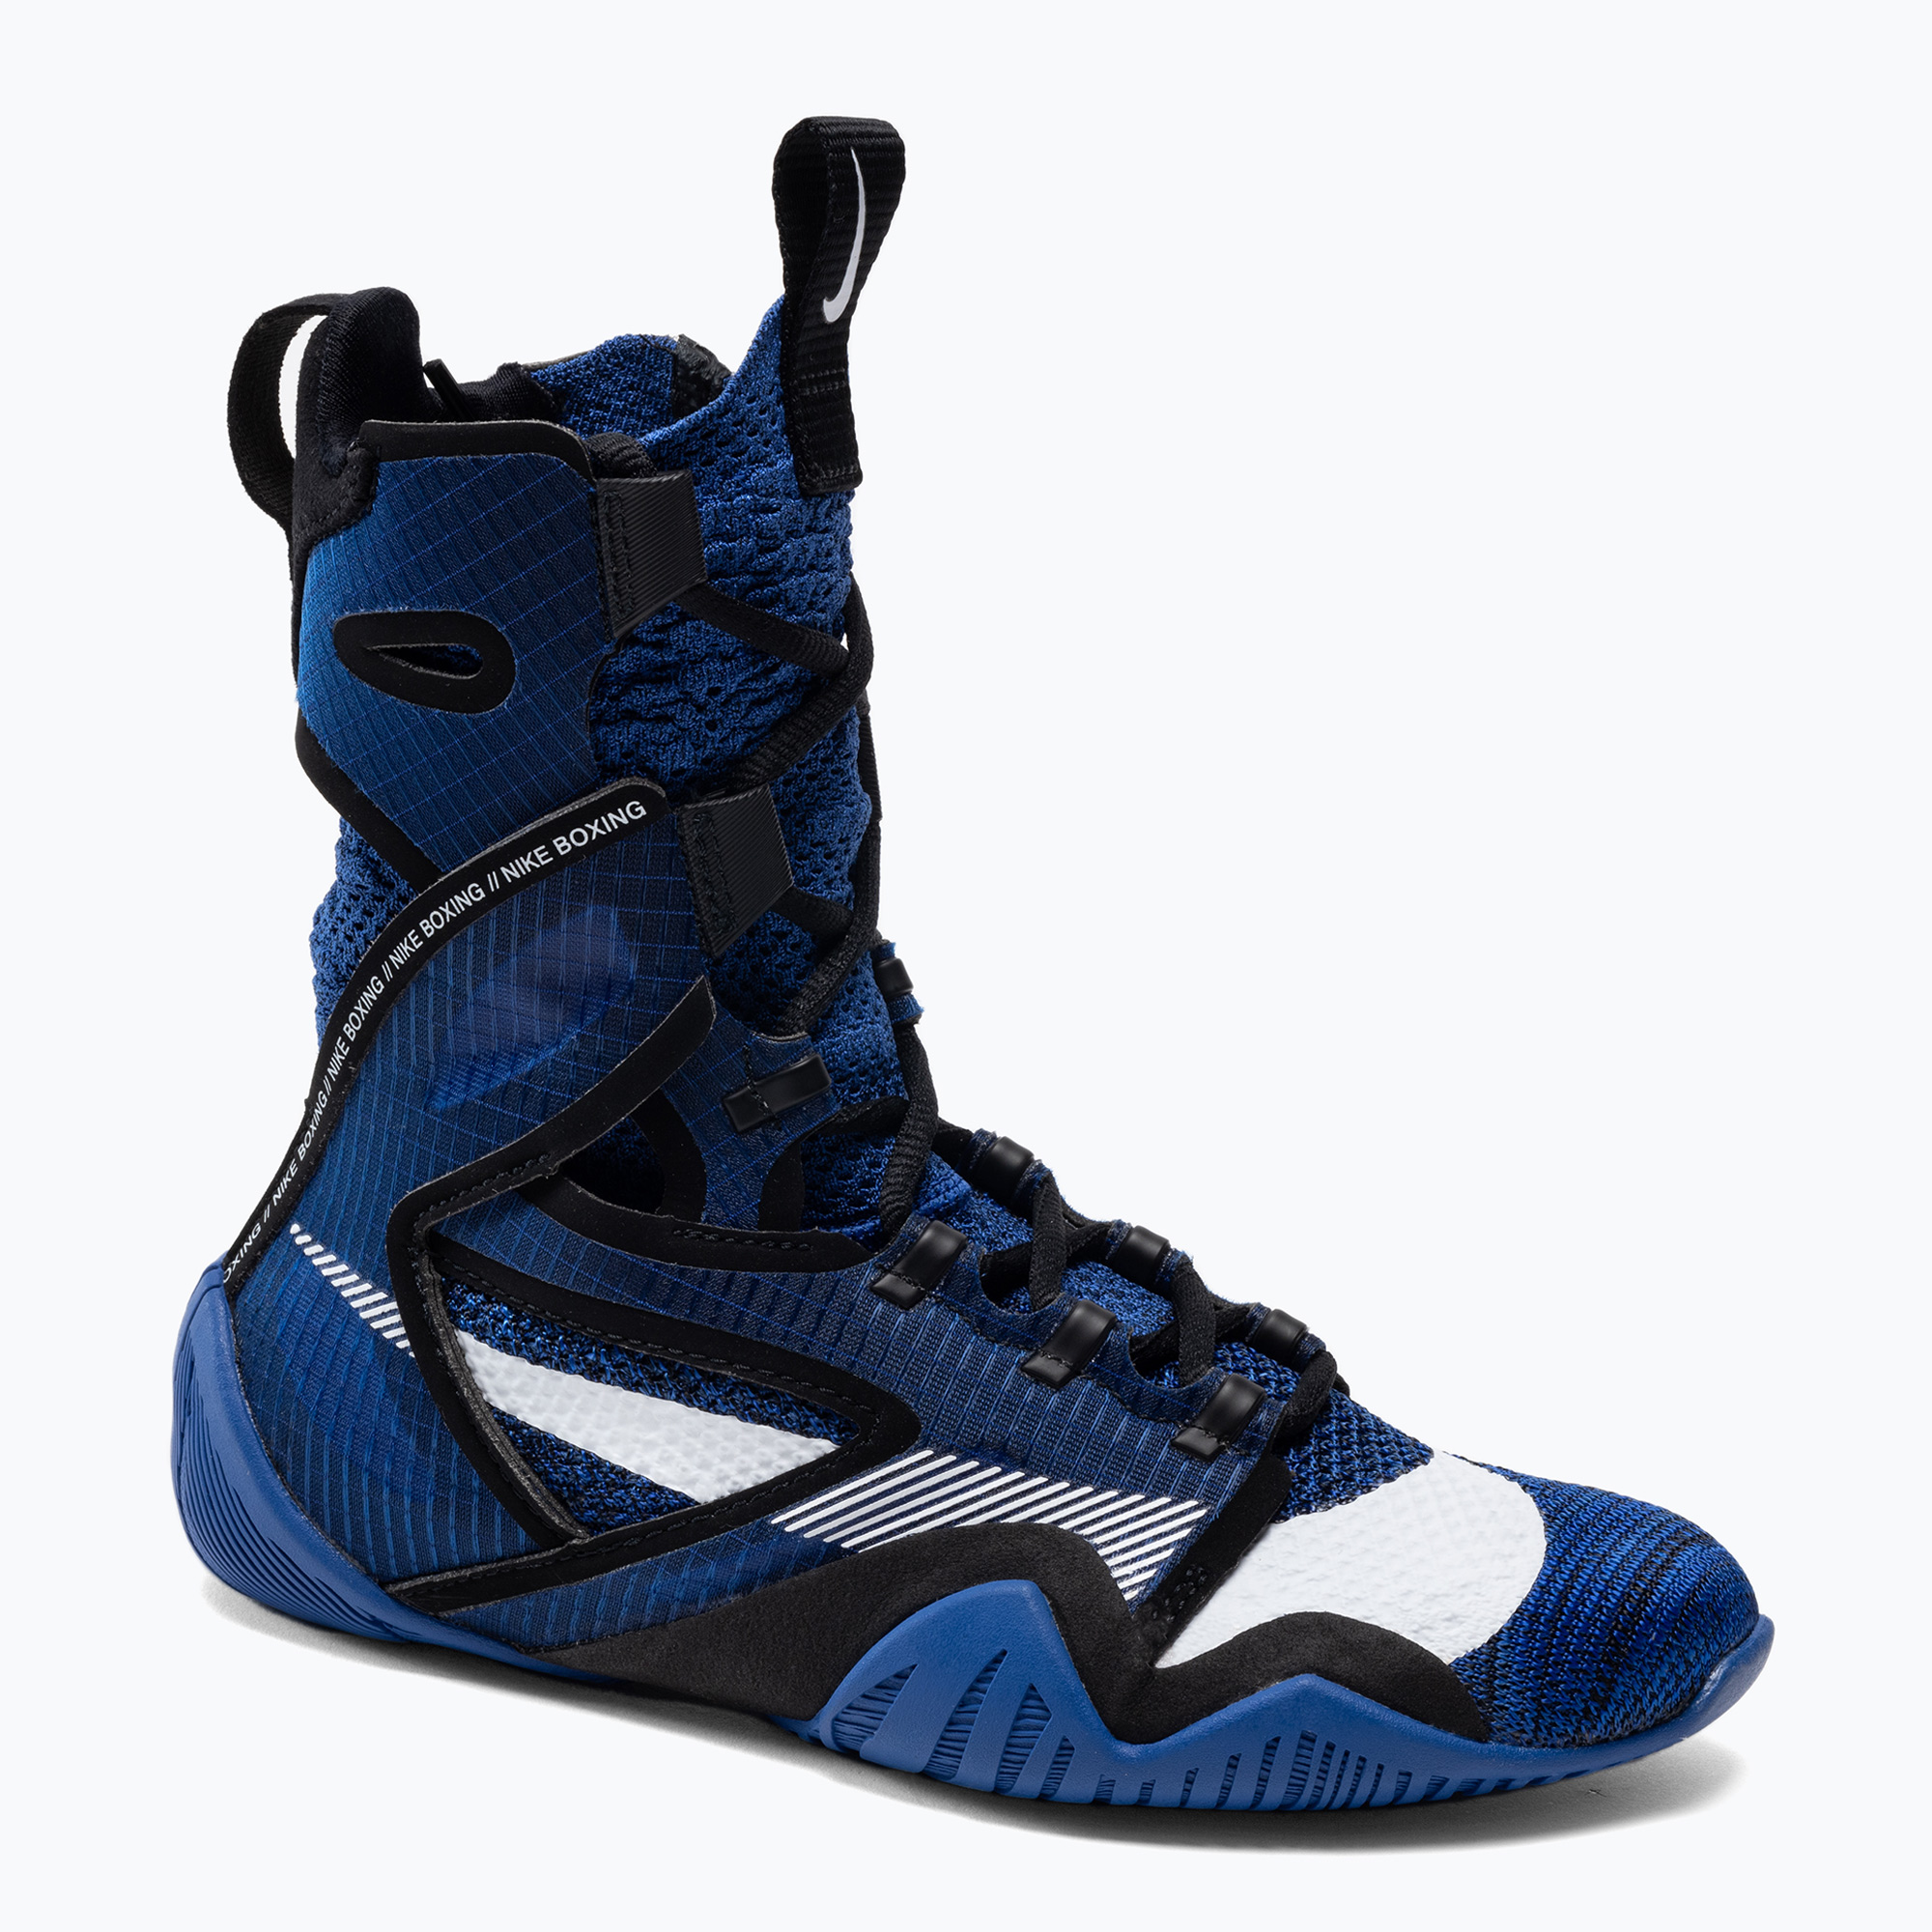 Boxerské topánky Nike Hyperko 2 navy blue CI2953-401